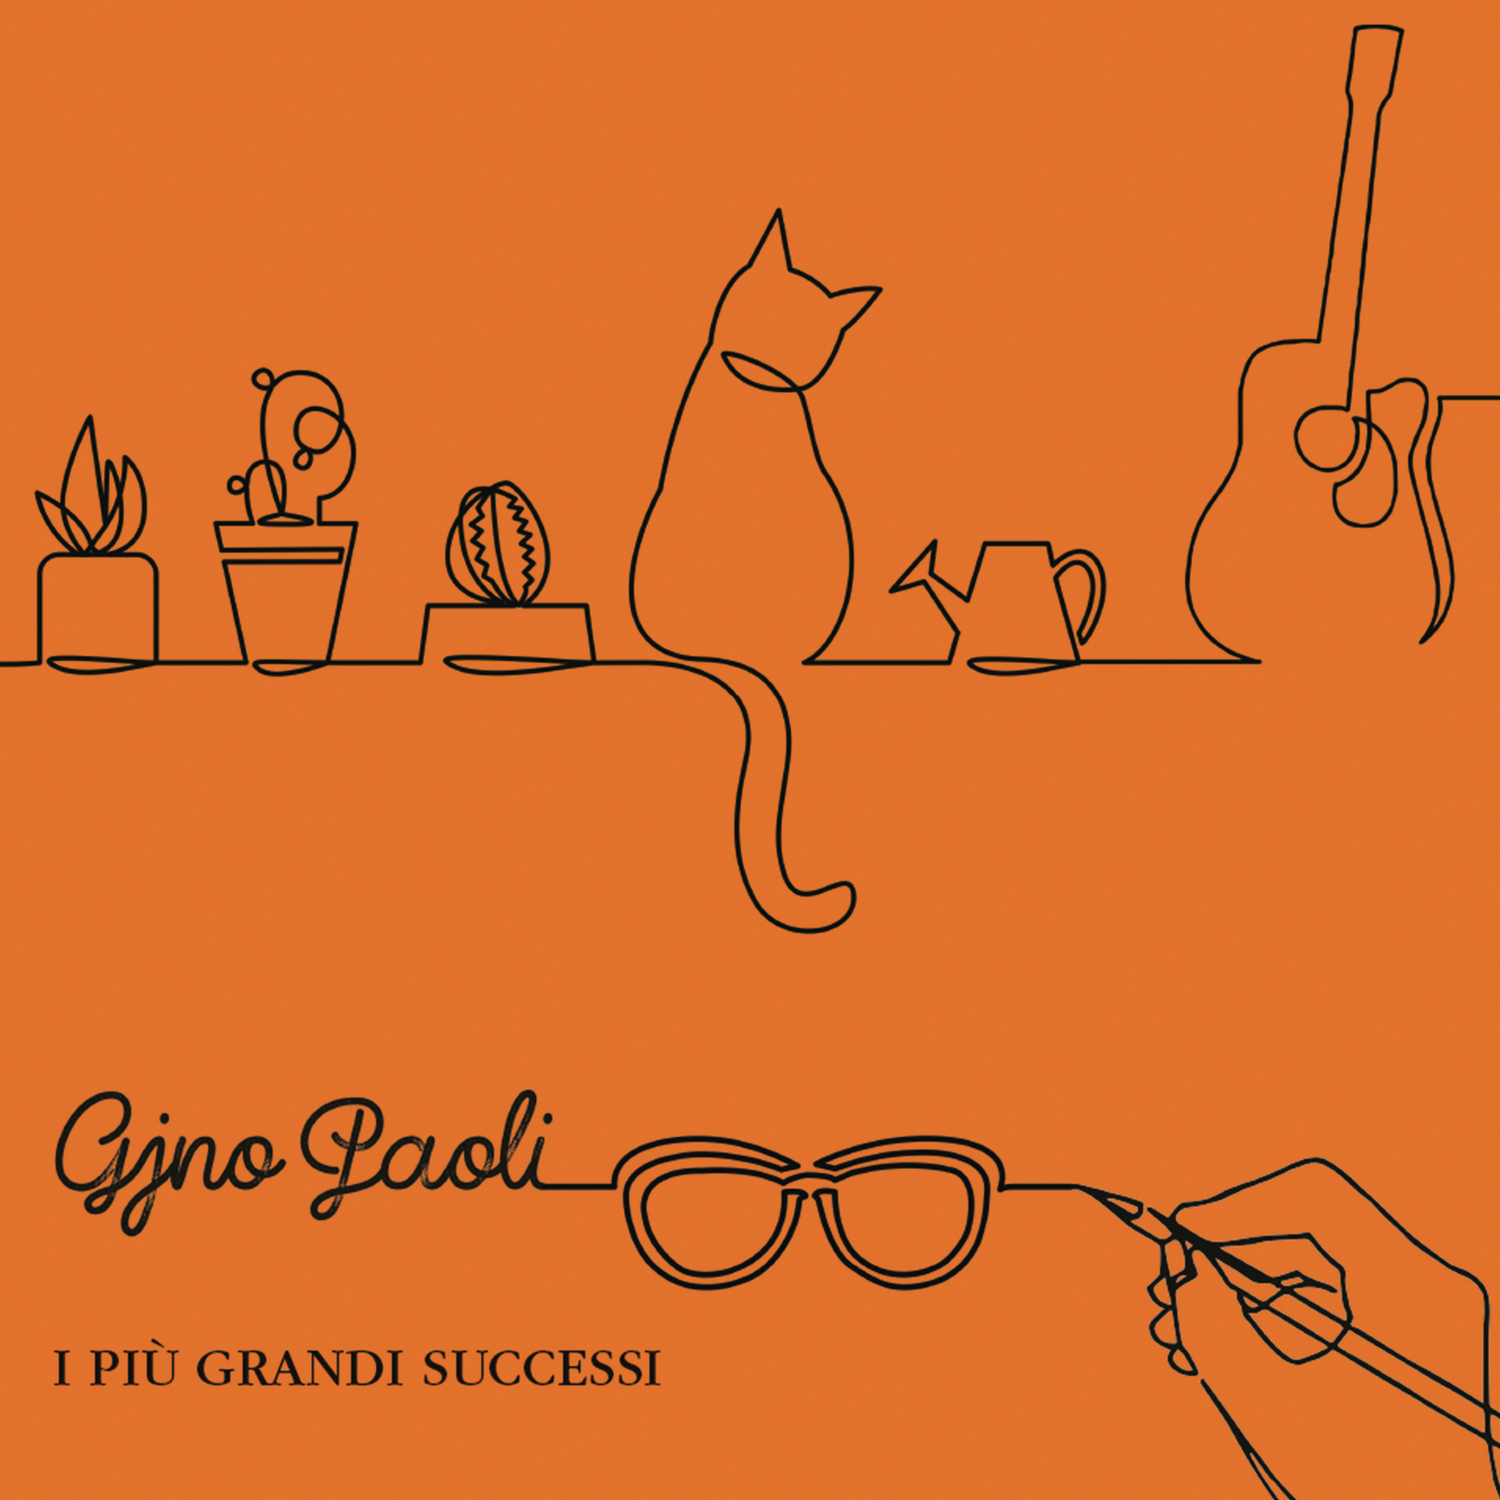 GINO PAOLI (GRANDI SUCCESSI) - ORANGE CD EDITION